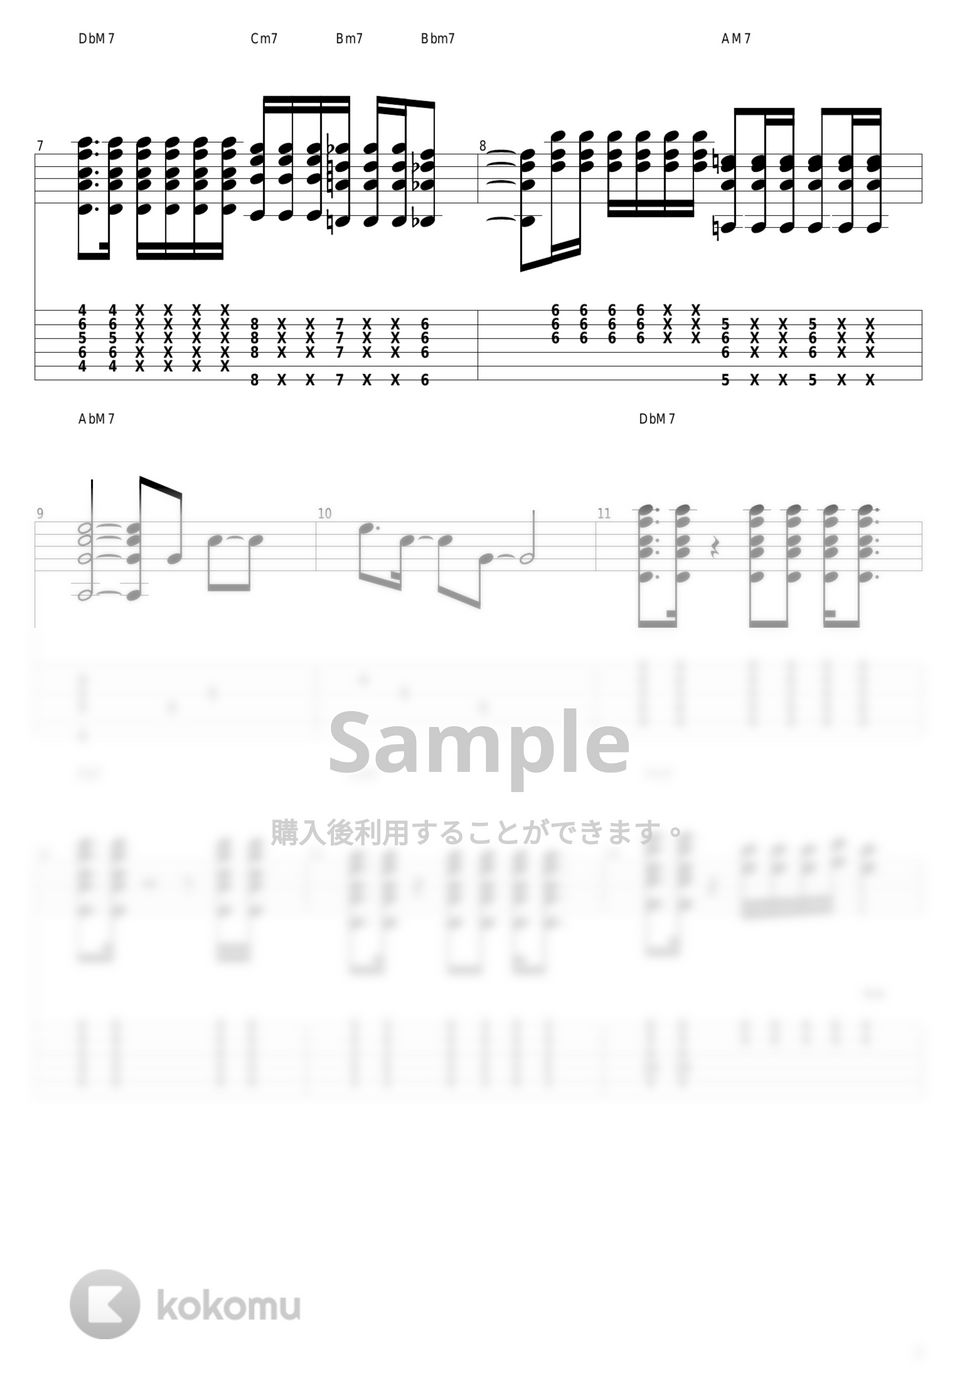 結束バンド - 星座になれたら (きたちゃんパート) by guitar cover with tab